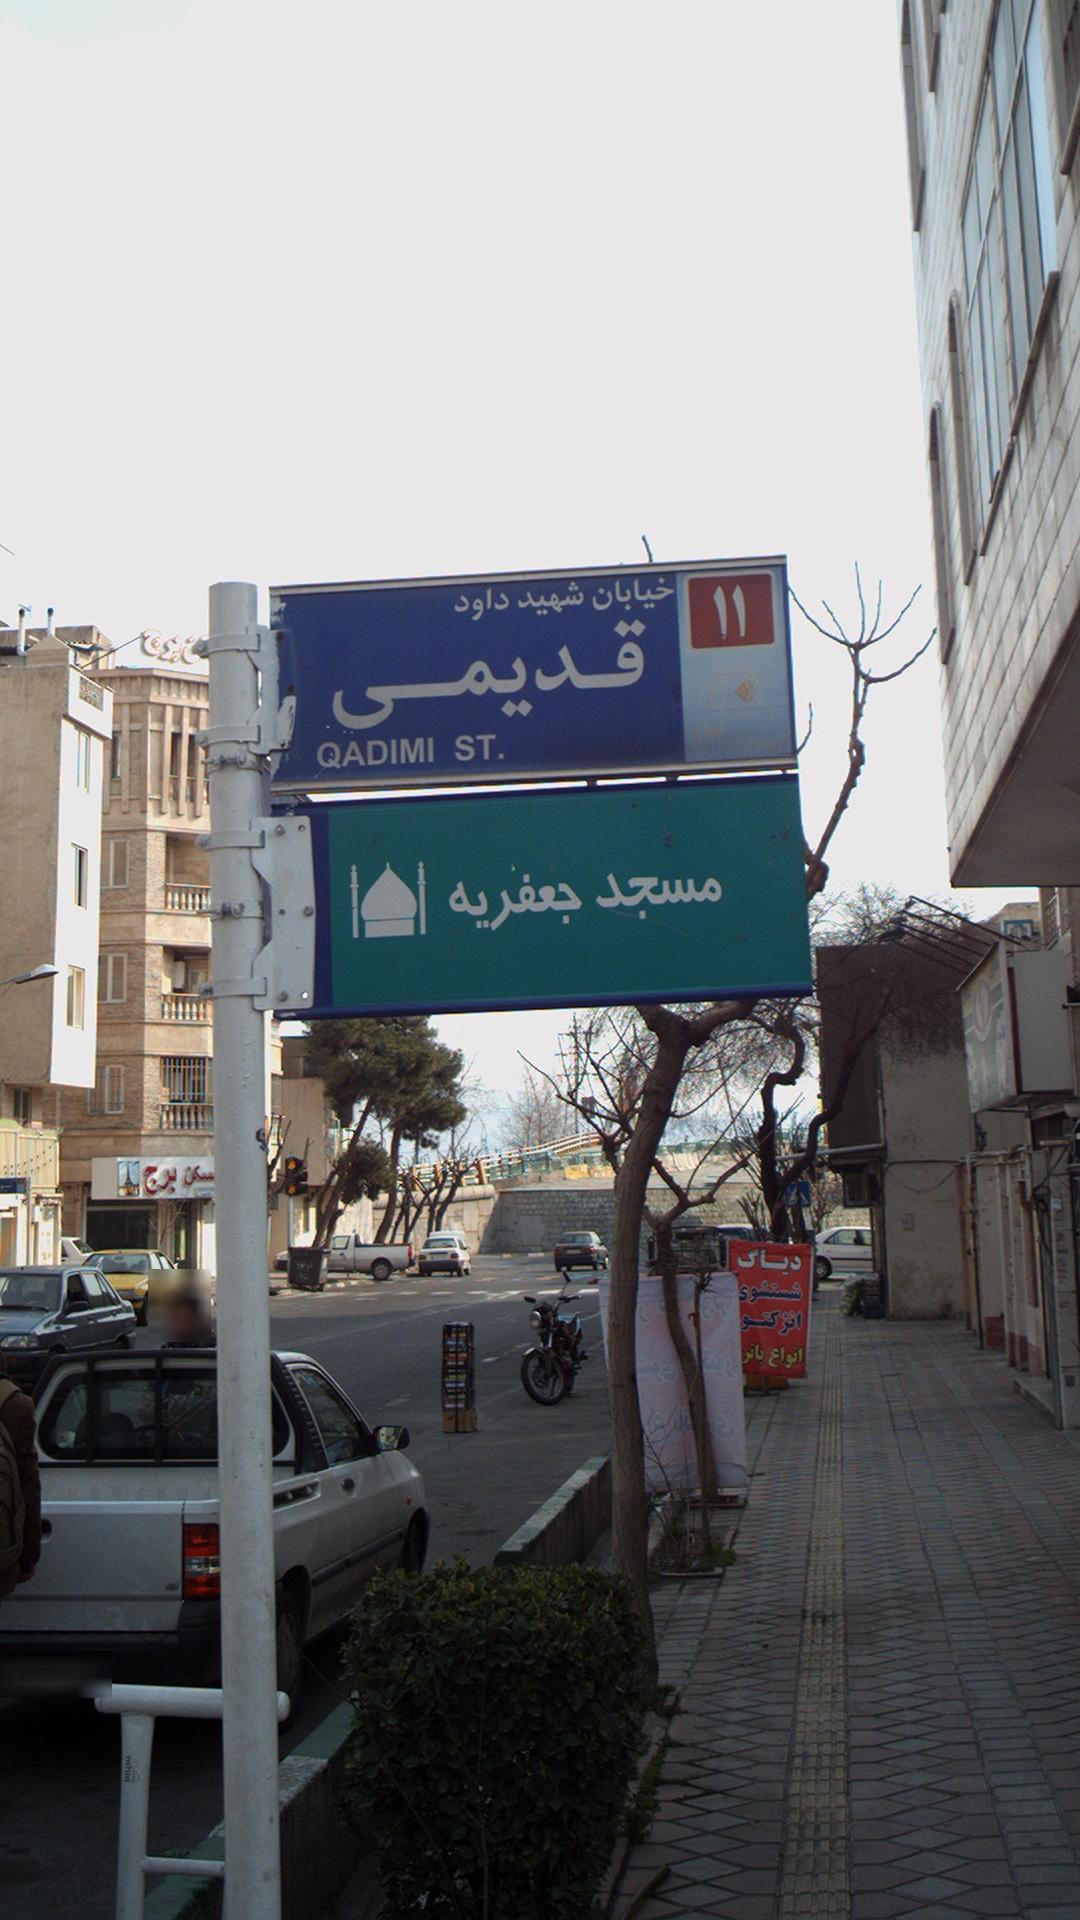 مسجد جعفریه محله شورا تهران؛ آدرس، تلفن، ساعت کاری | نقشه و مسیریاب بلد